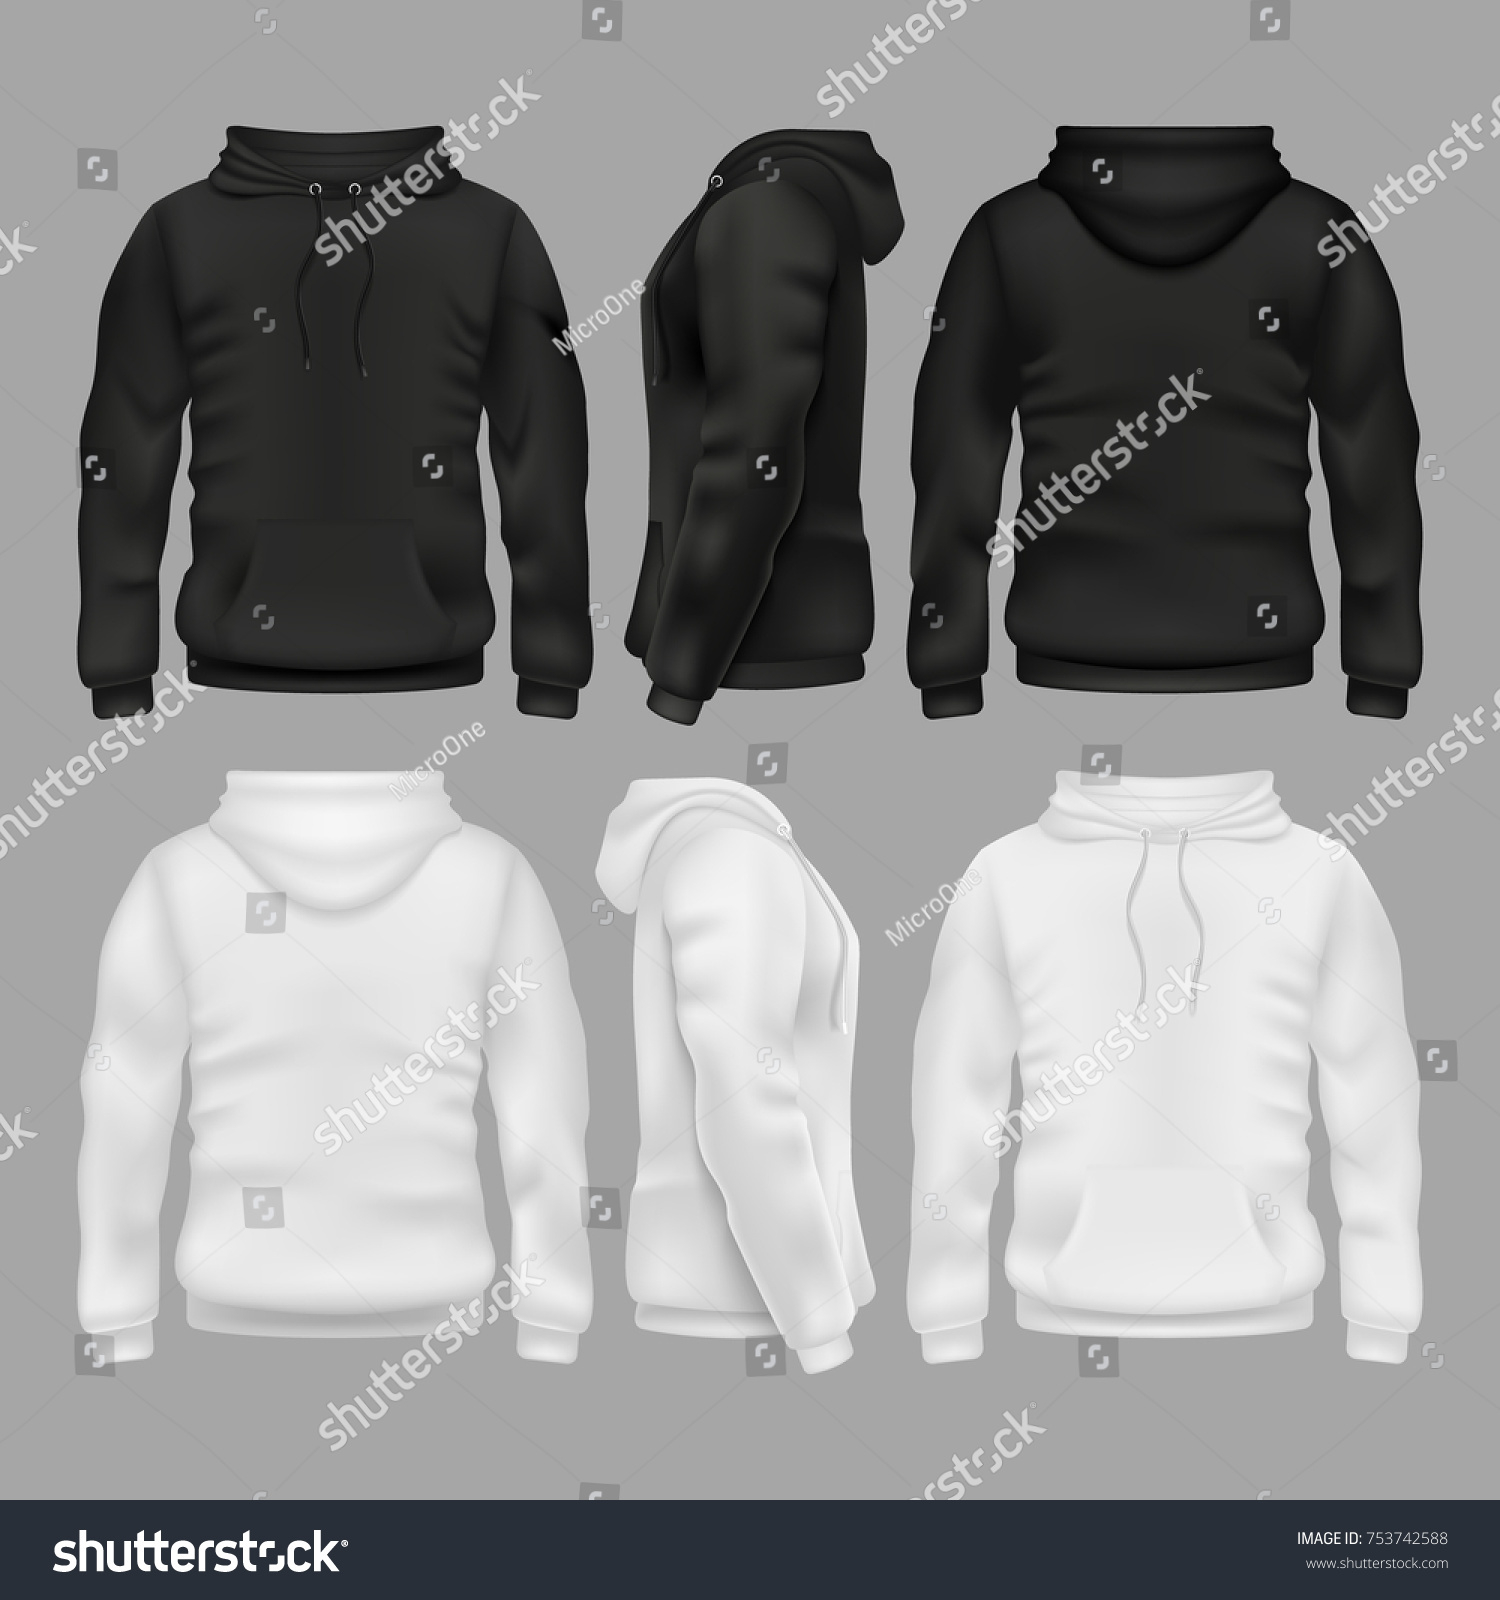 Schwarz-Stachelvektor-Vorlage vorne und hinten. Sweatshirt-Mode